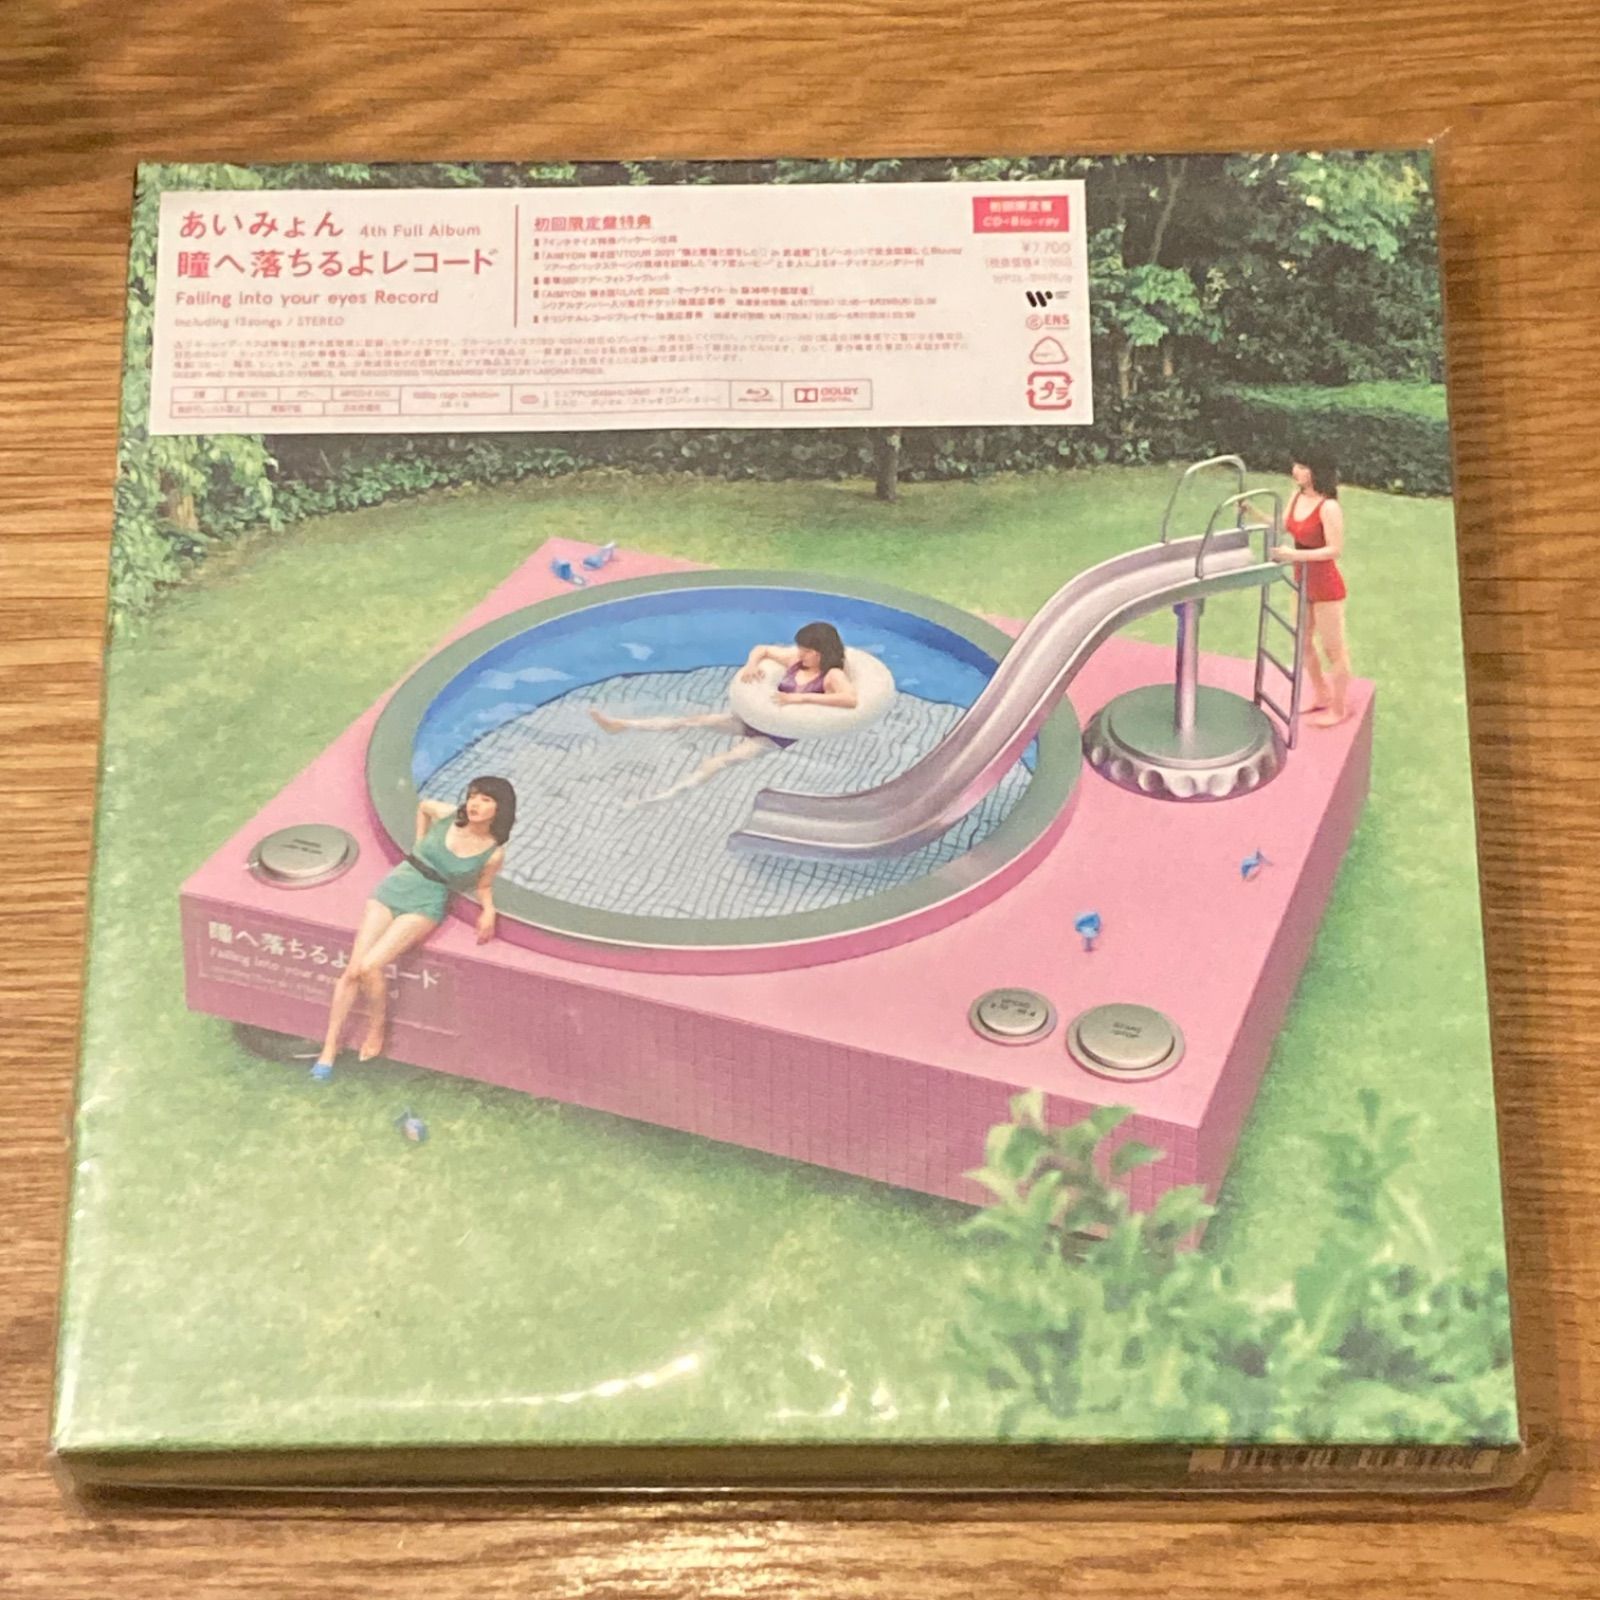 あいみょん/ 瞳へ落ちるよレコード 初回限定盤【CD+Blu-ray】 - メルカリ